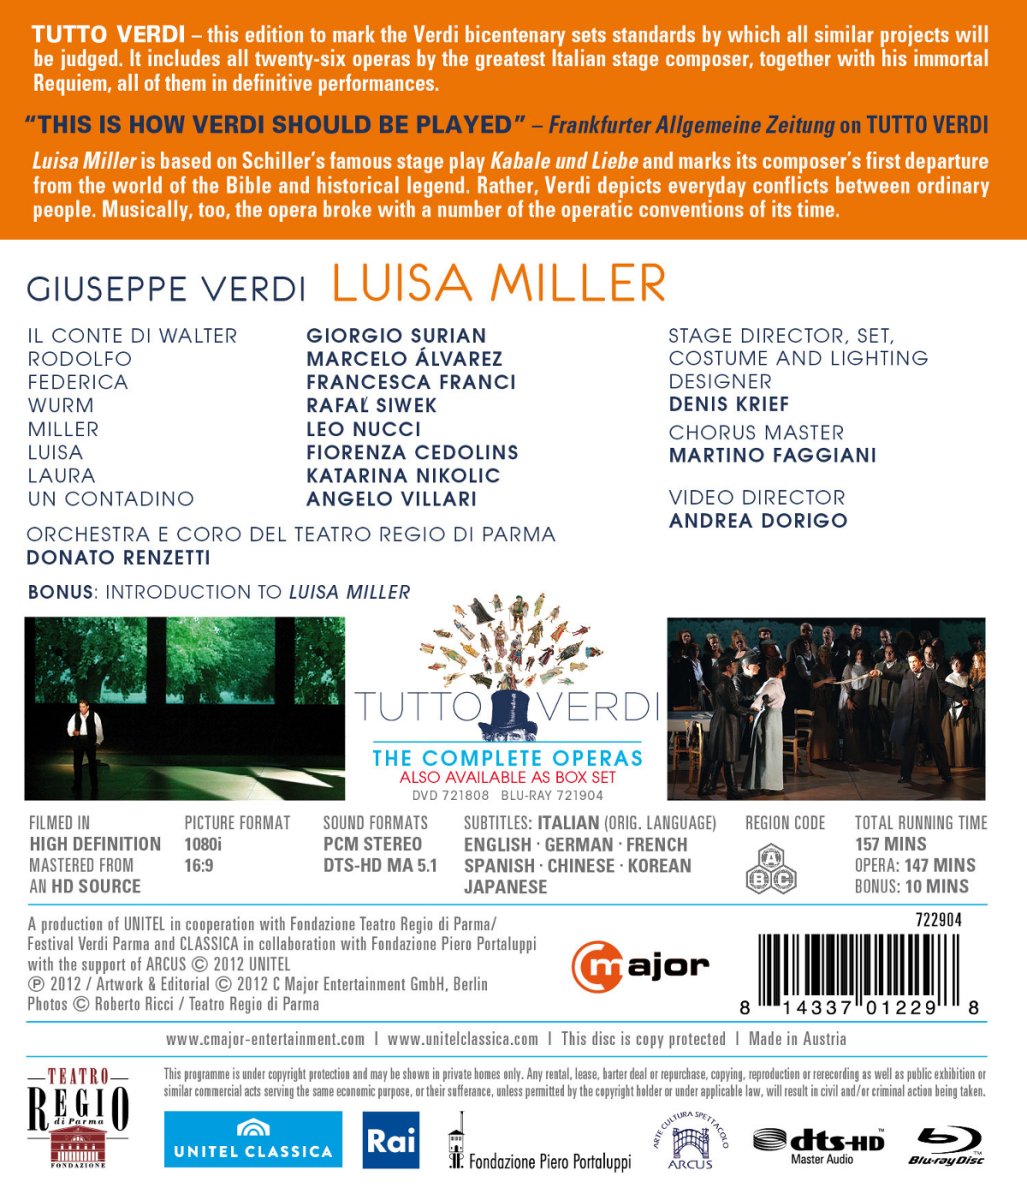 Donato Renzetti 베르디: 루이자 밀러 (Giuseppe Verdi: Tutto Verdi Vol. 14 - Luisa Miller)